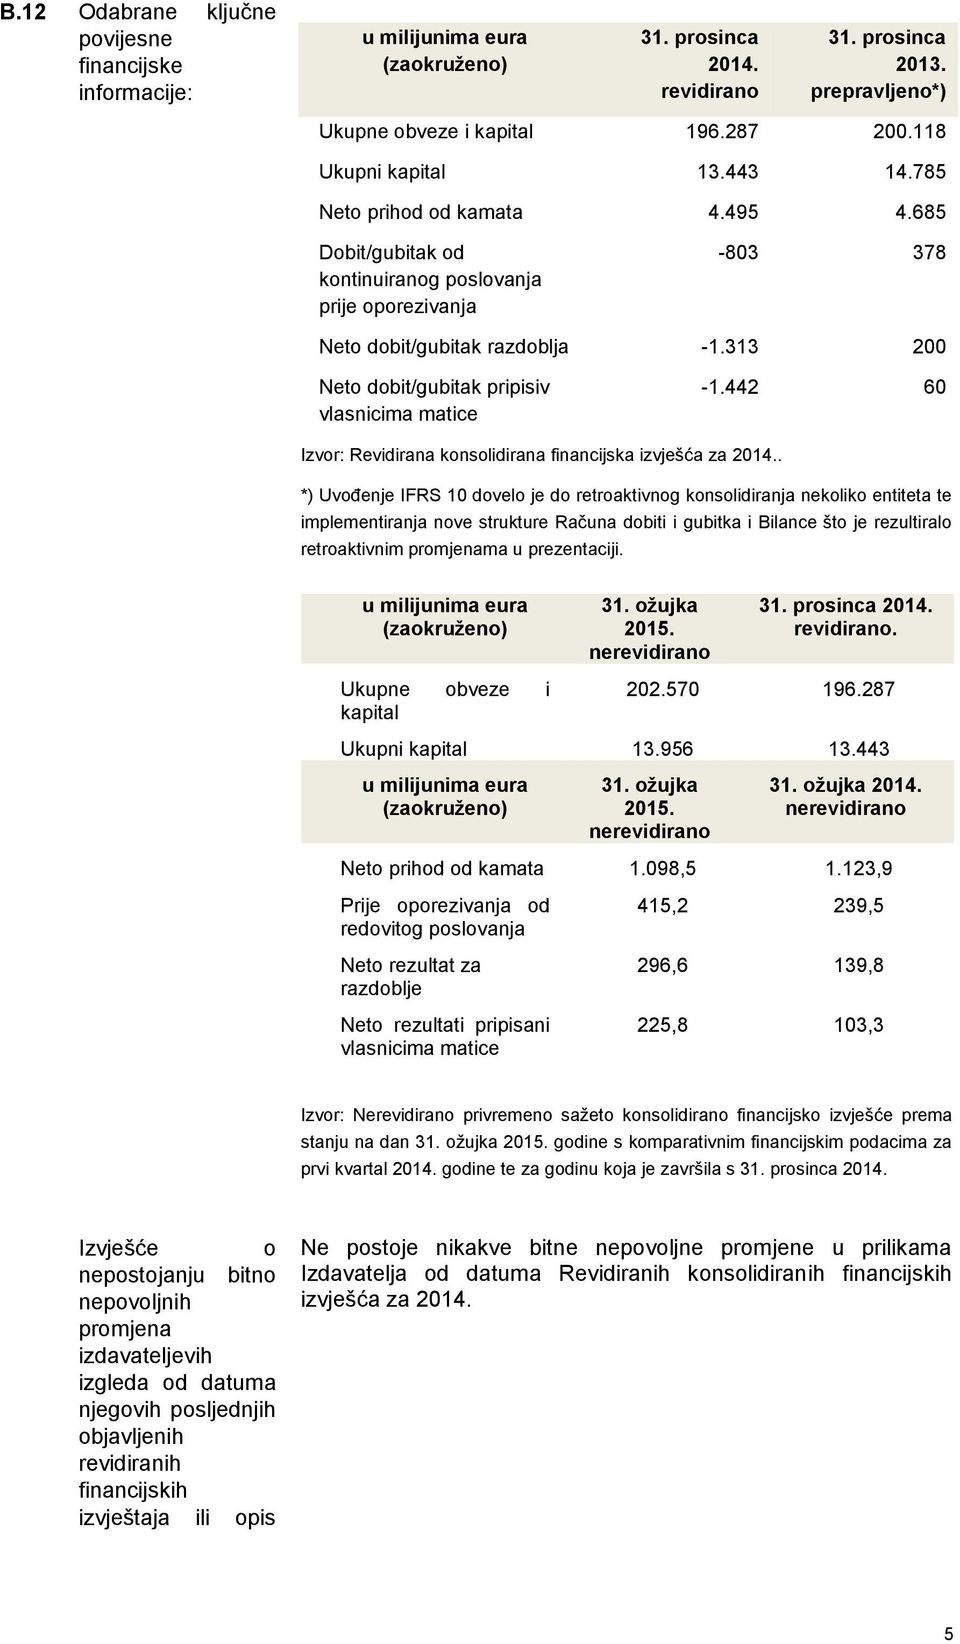 313 200 Neto dobit/gubitak pripisiv vlasnicima matice -1.442 60 Izvor: Revidirana konsolidirana financijska izvješća za 2014.